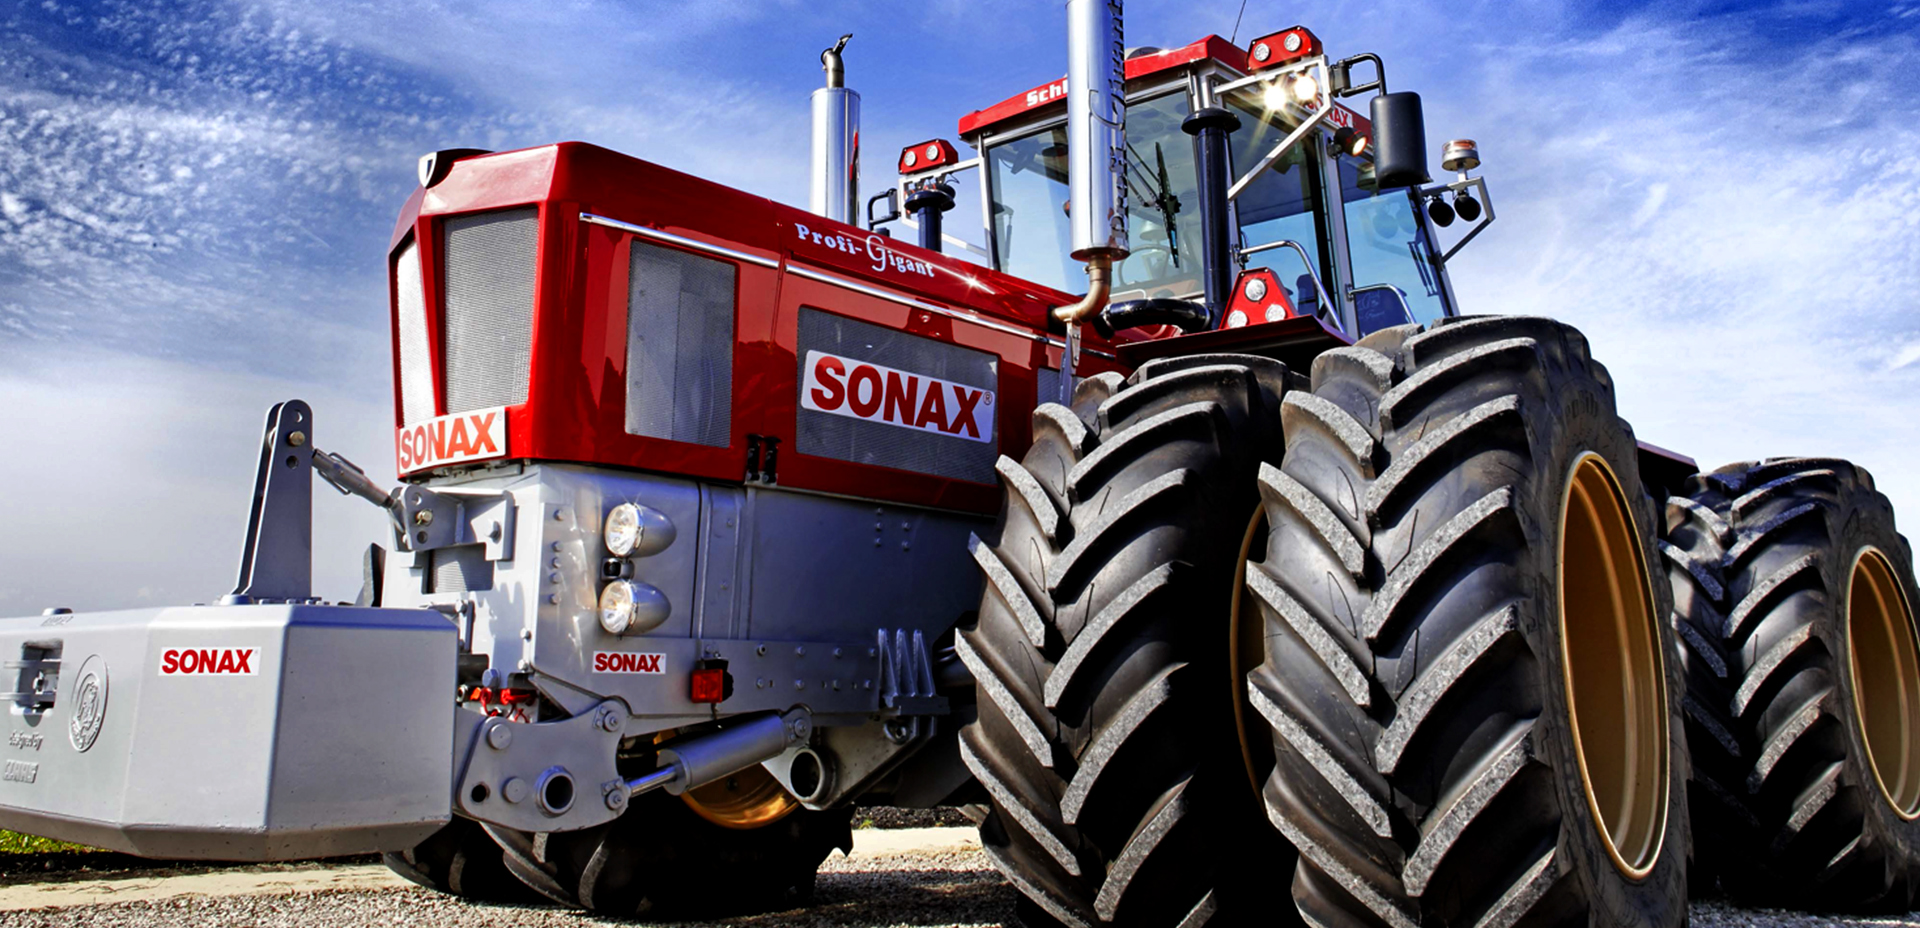 Ein glänzender roter Traktor mit SONAX-Aufklebern.